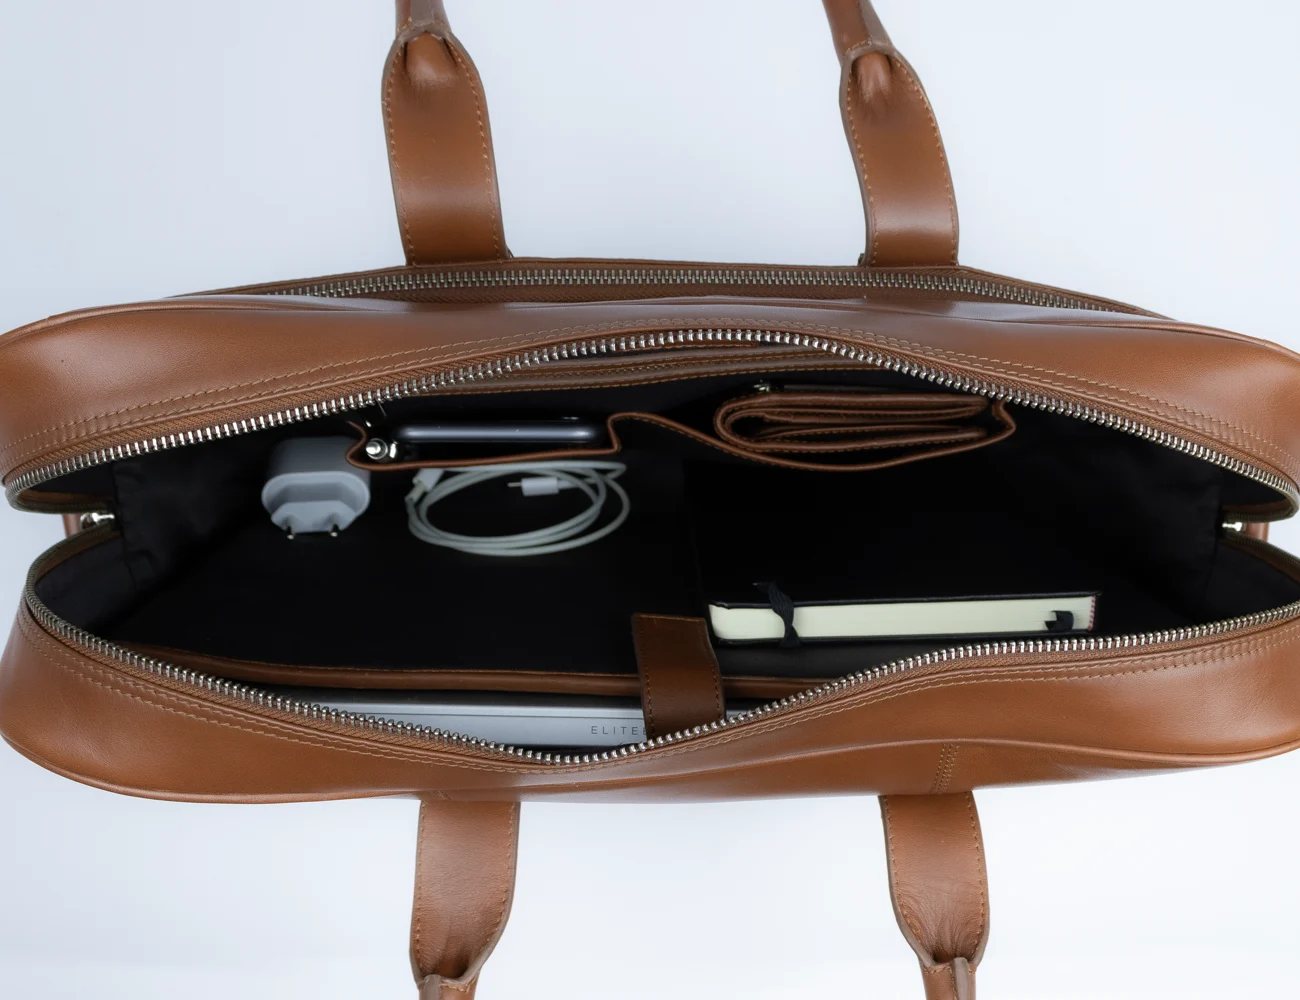 Bagtrainer - San Francisco Laptoptas - Gemaakt uit hoogwaardig volnerfleer in de kleur tan, met een minimalistisch, functioneel en duurzaam design.